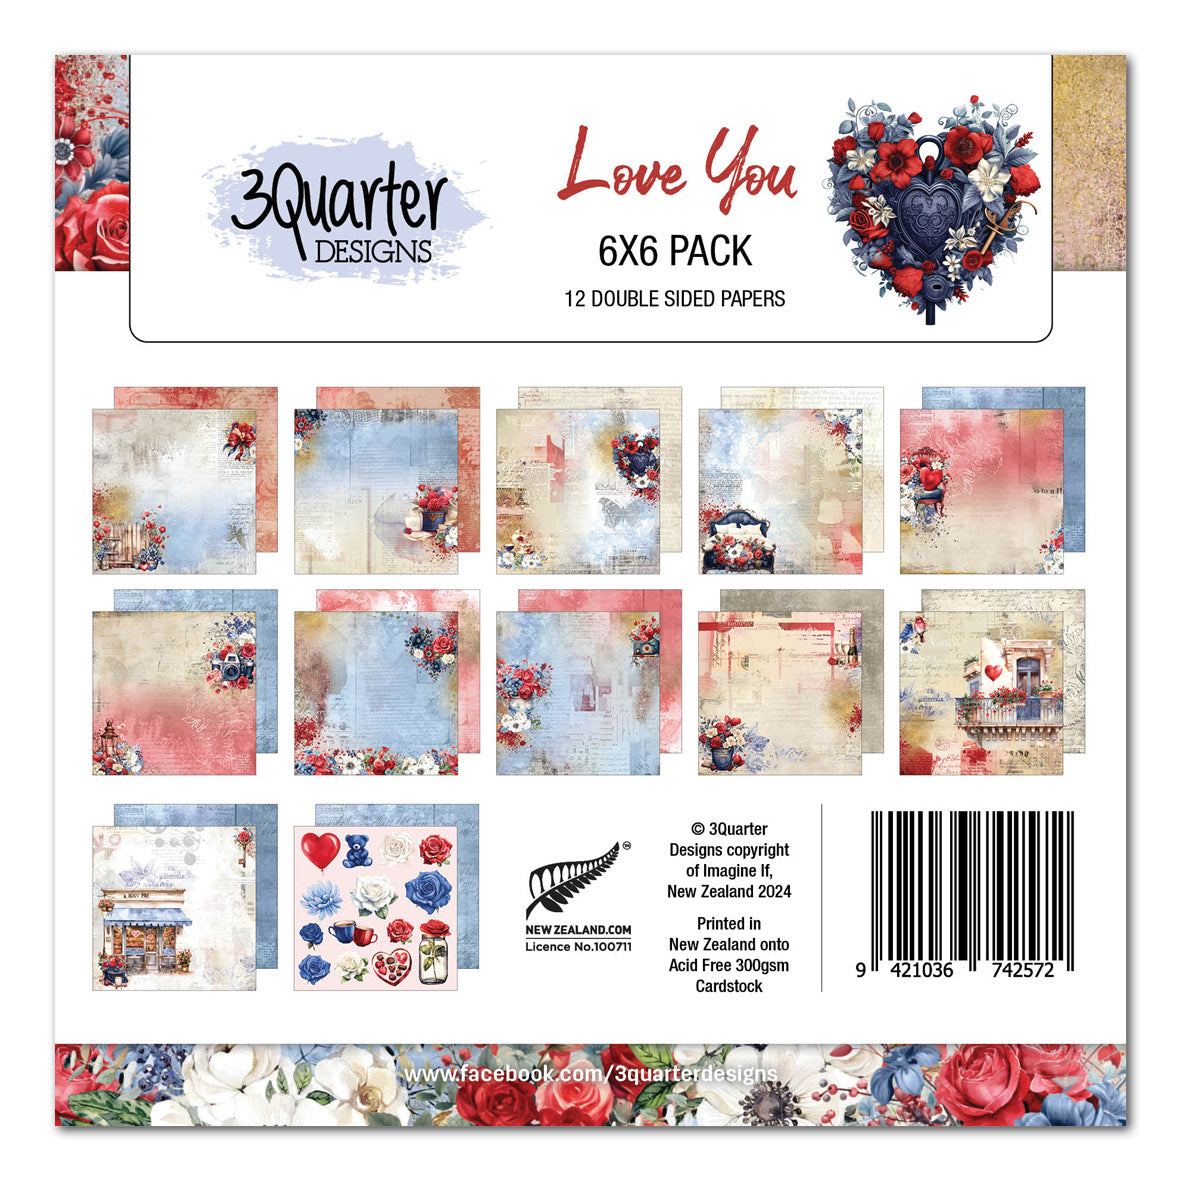 3Quarter Designs Love You 6x6 Paper Pack